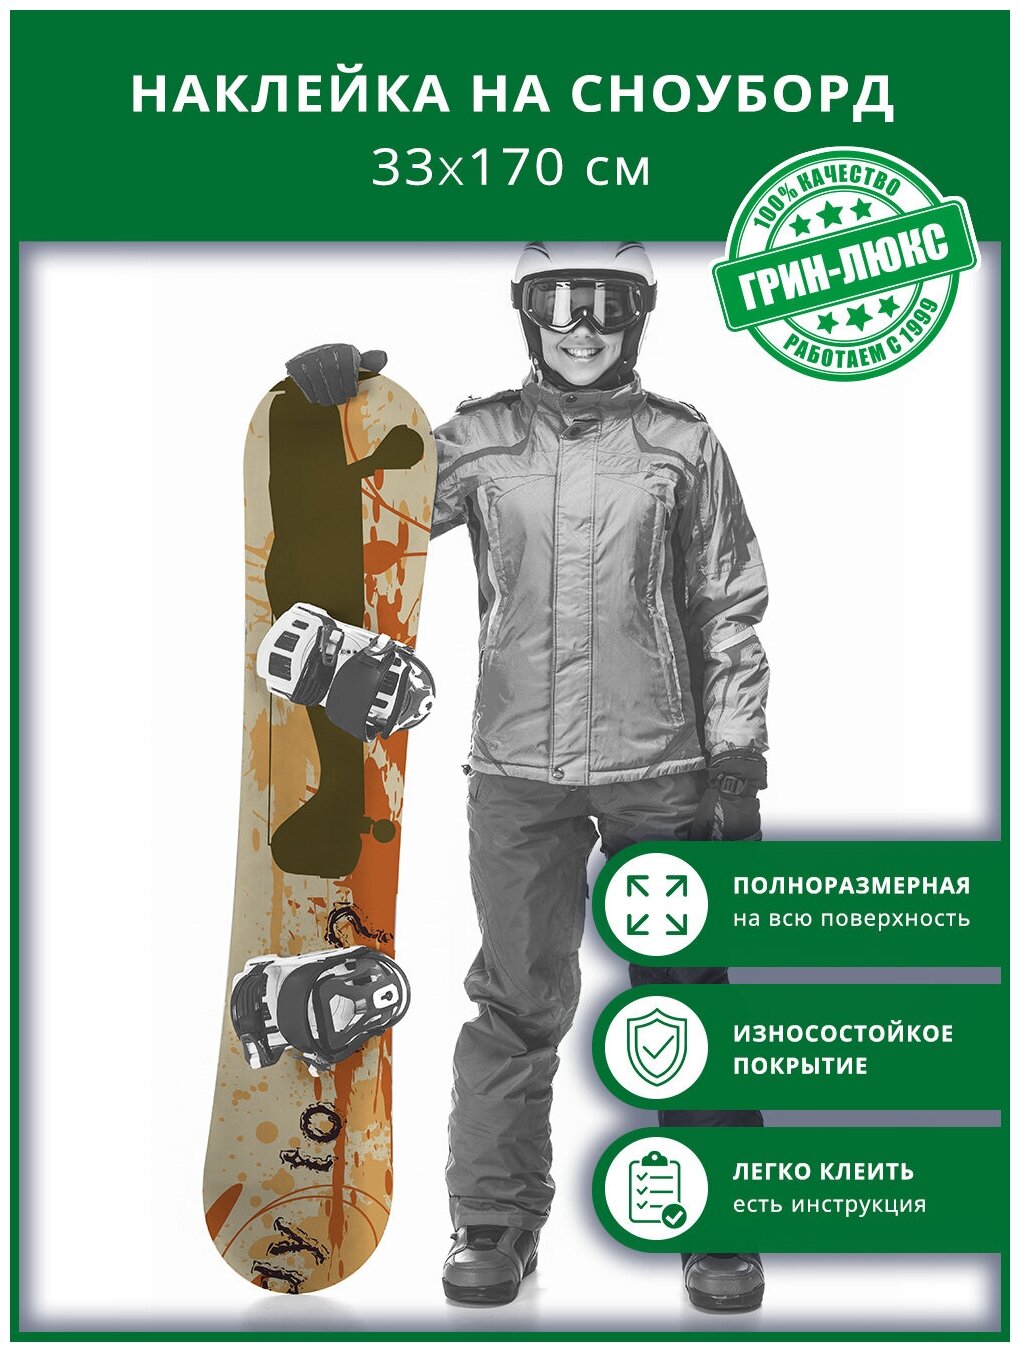 Наклейка на сноуборд с защитным глянцевым покрытием 33х170 см "Первый полет"